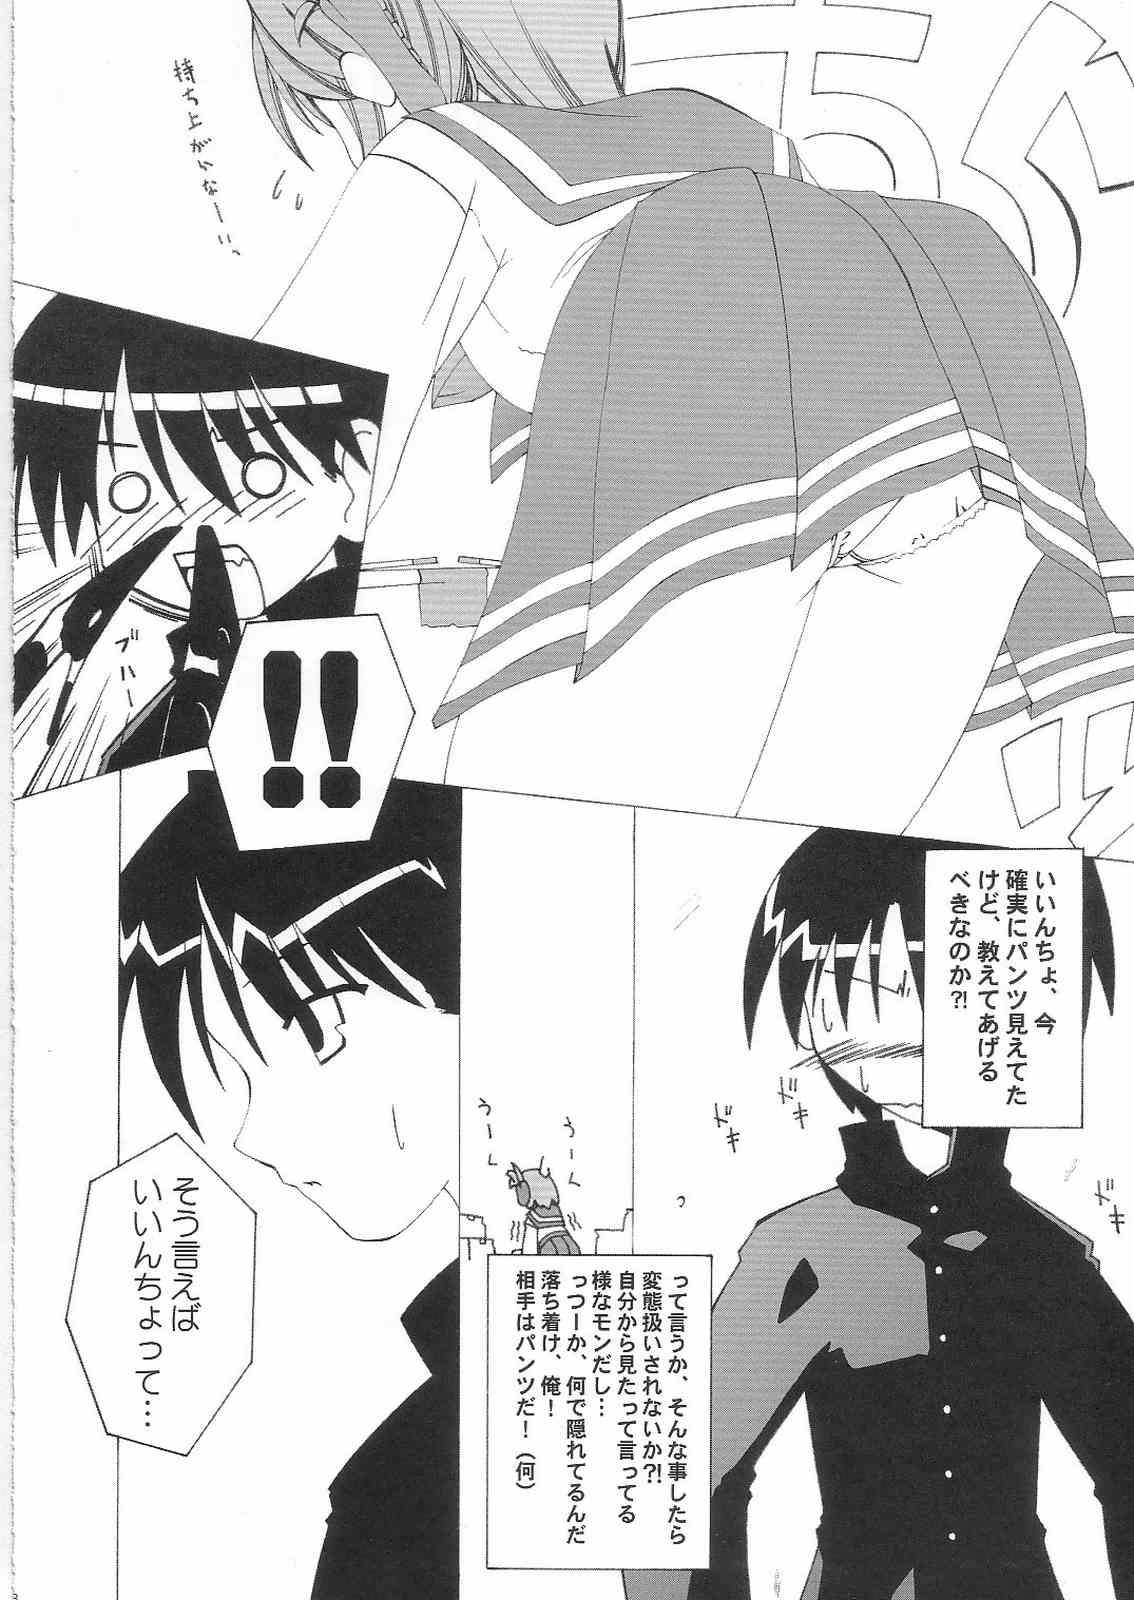 Masterbate Kimi wo Soba ni Kanjiru Tabi ni Shiawase ni Nareru - Toheart2 Creamy - Page 7